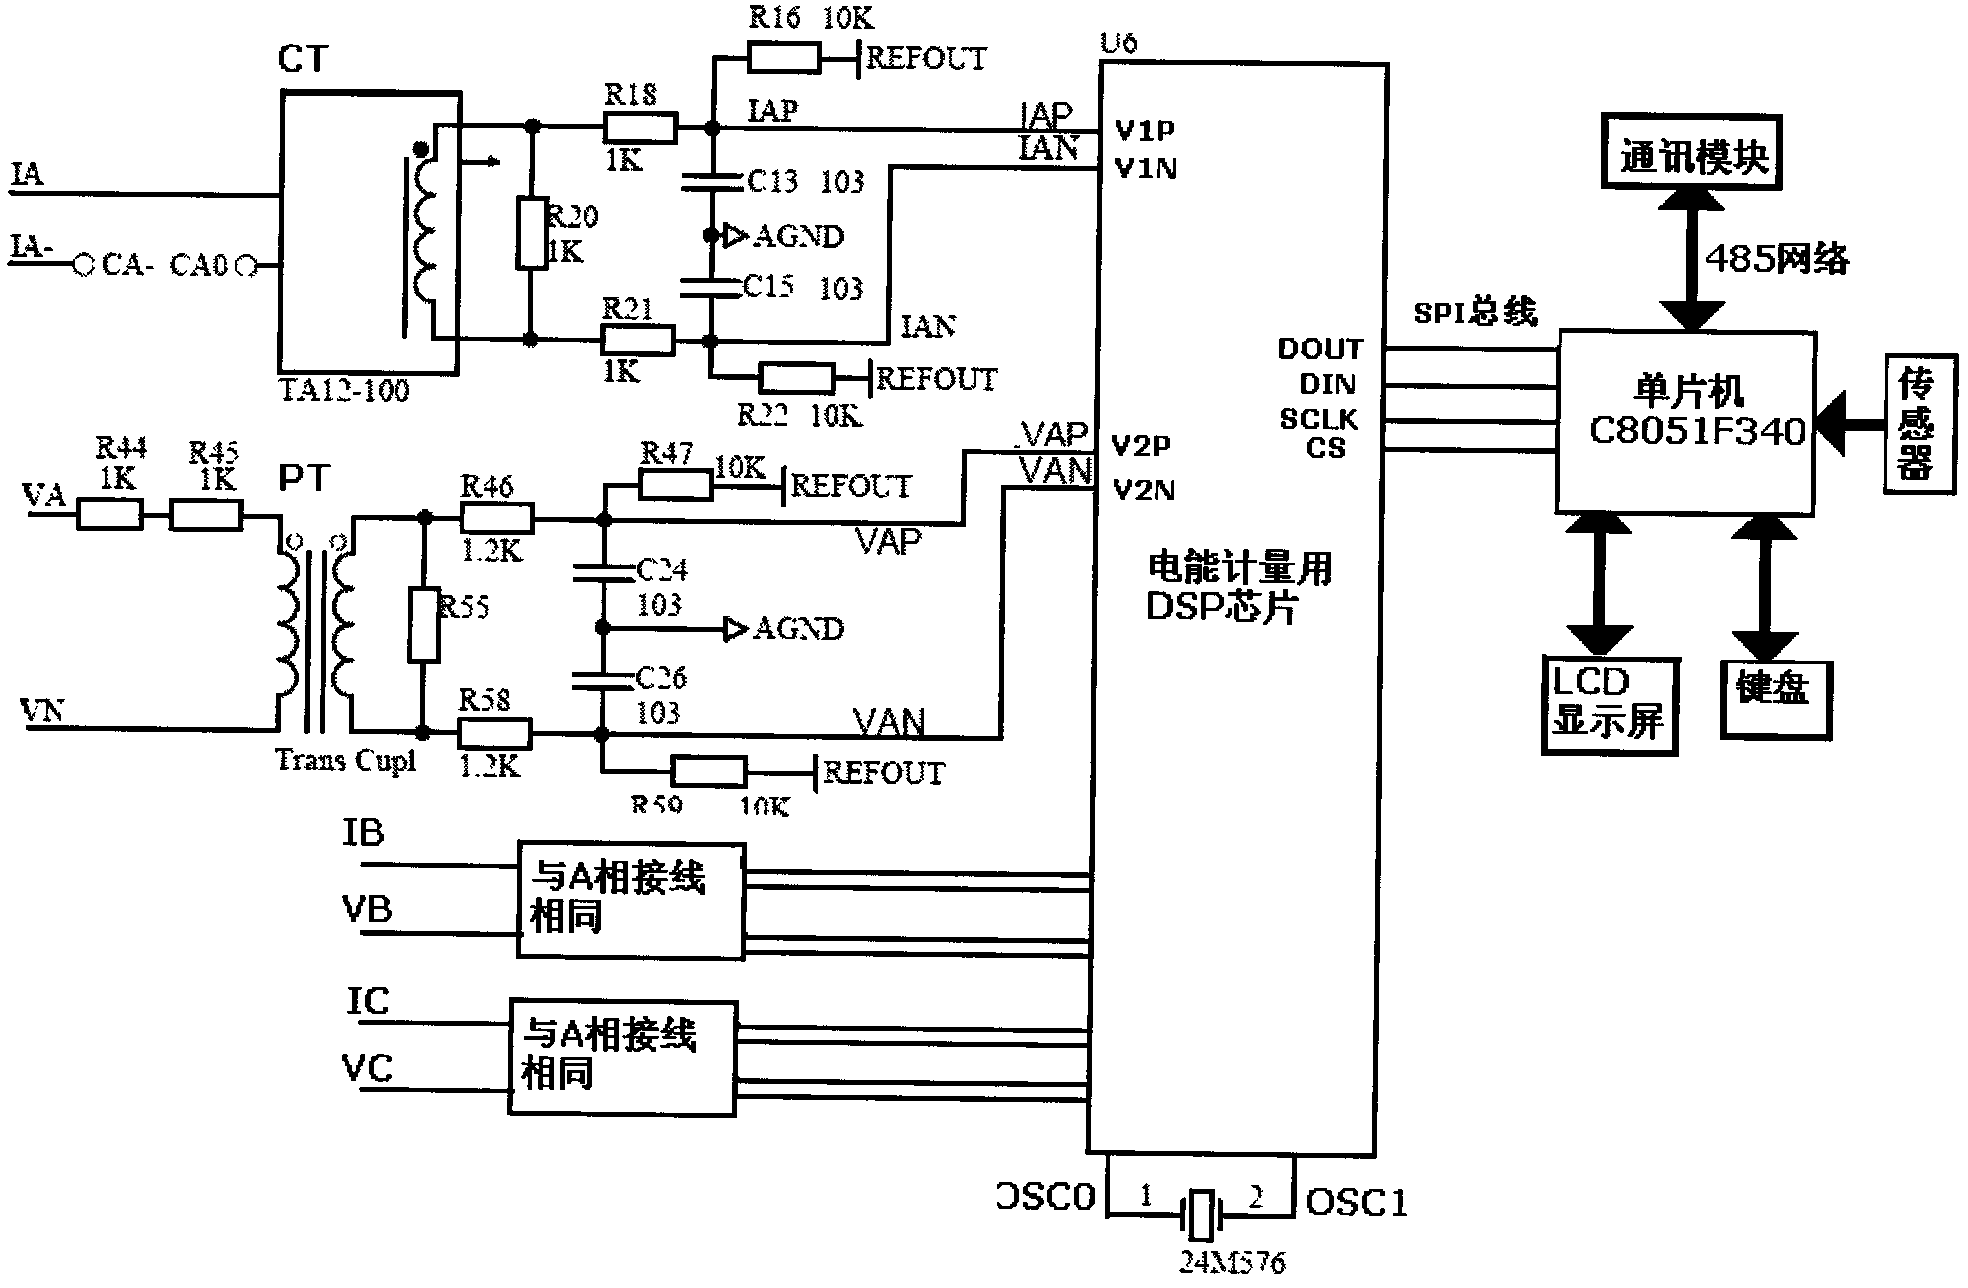 Motor parameter detector